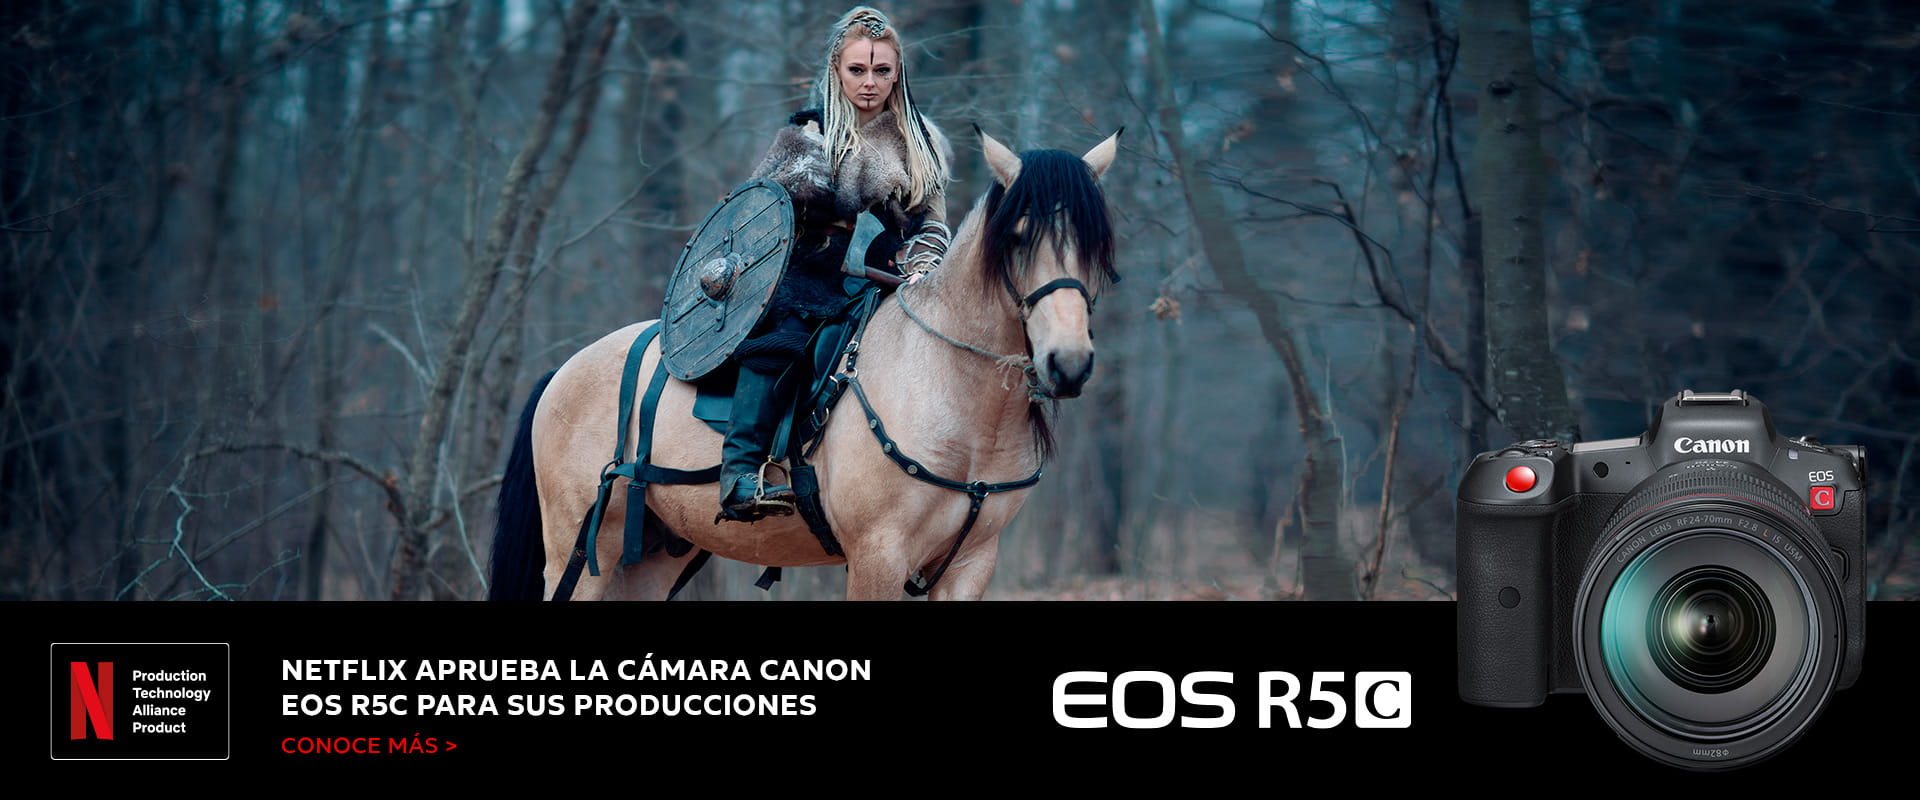 NETFLIX aprueba la cámara Canon EOS R5C para sus producciones